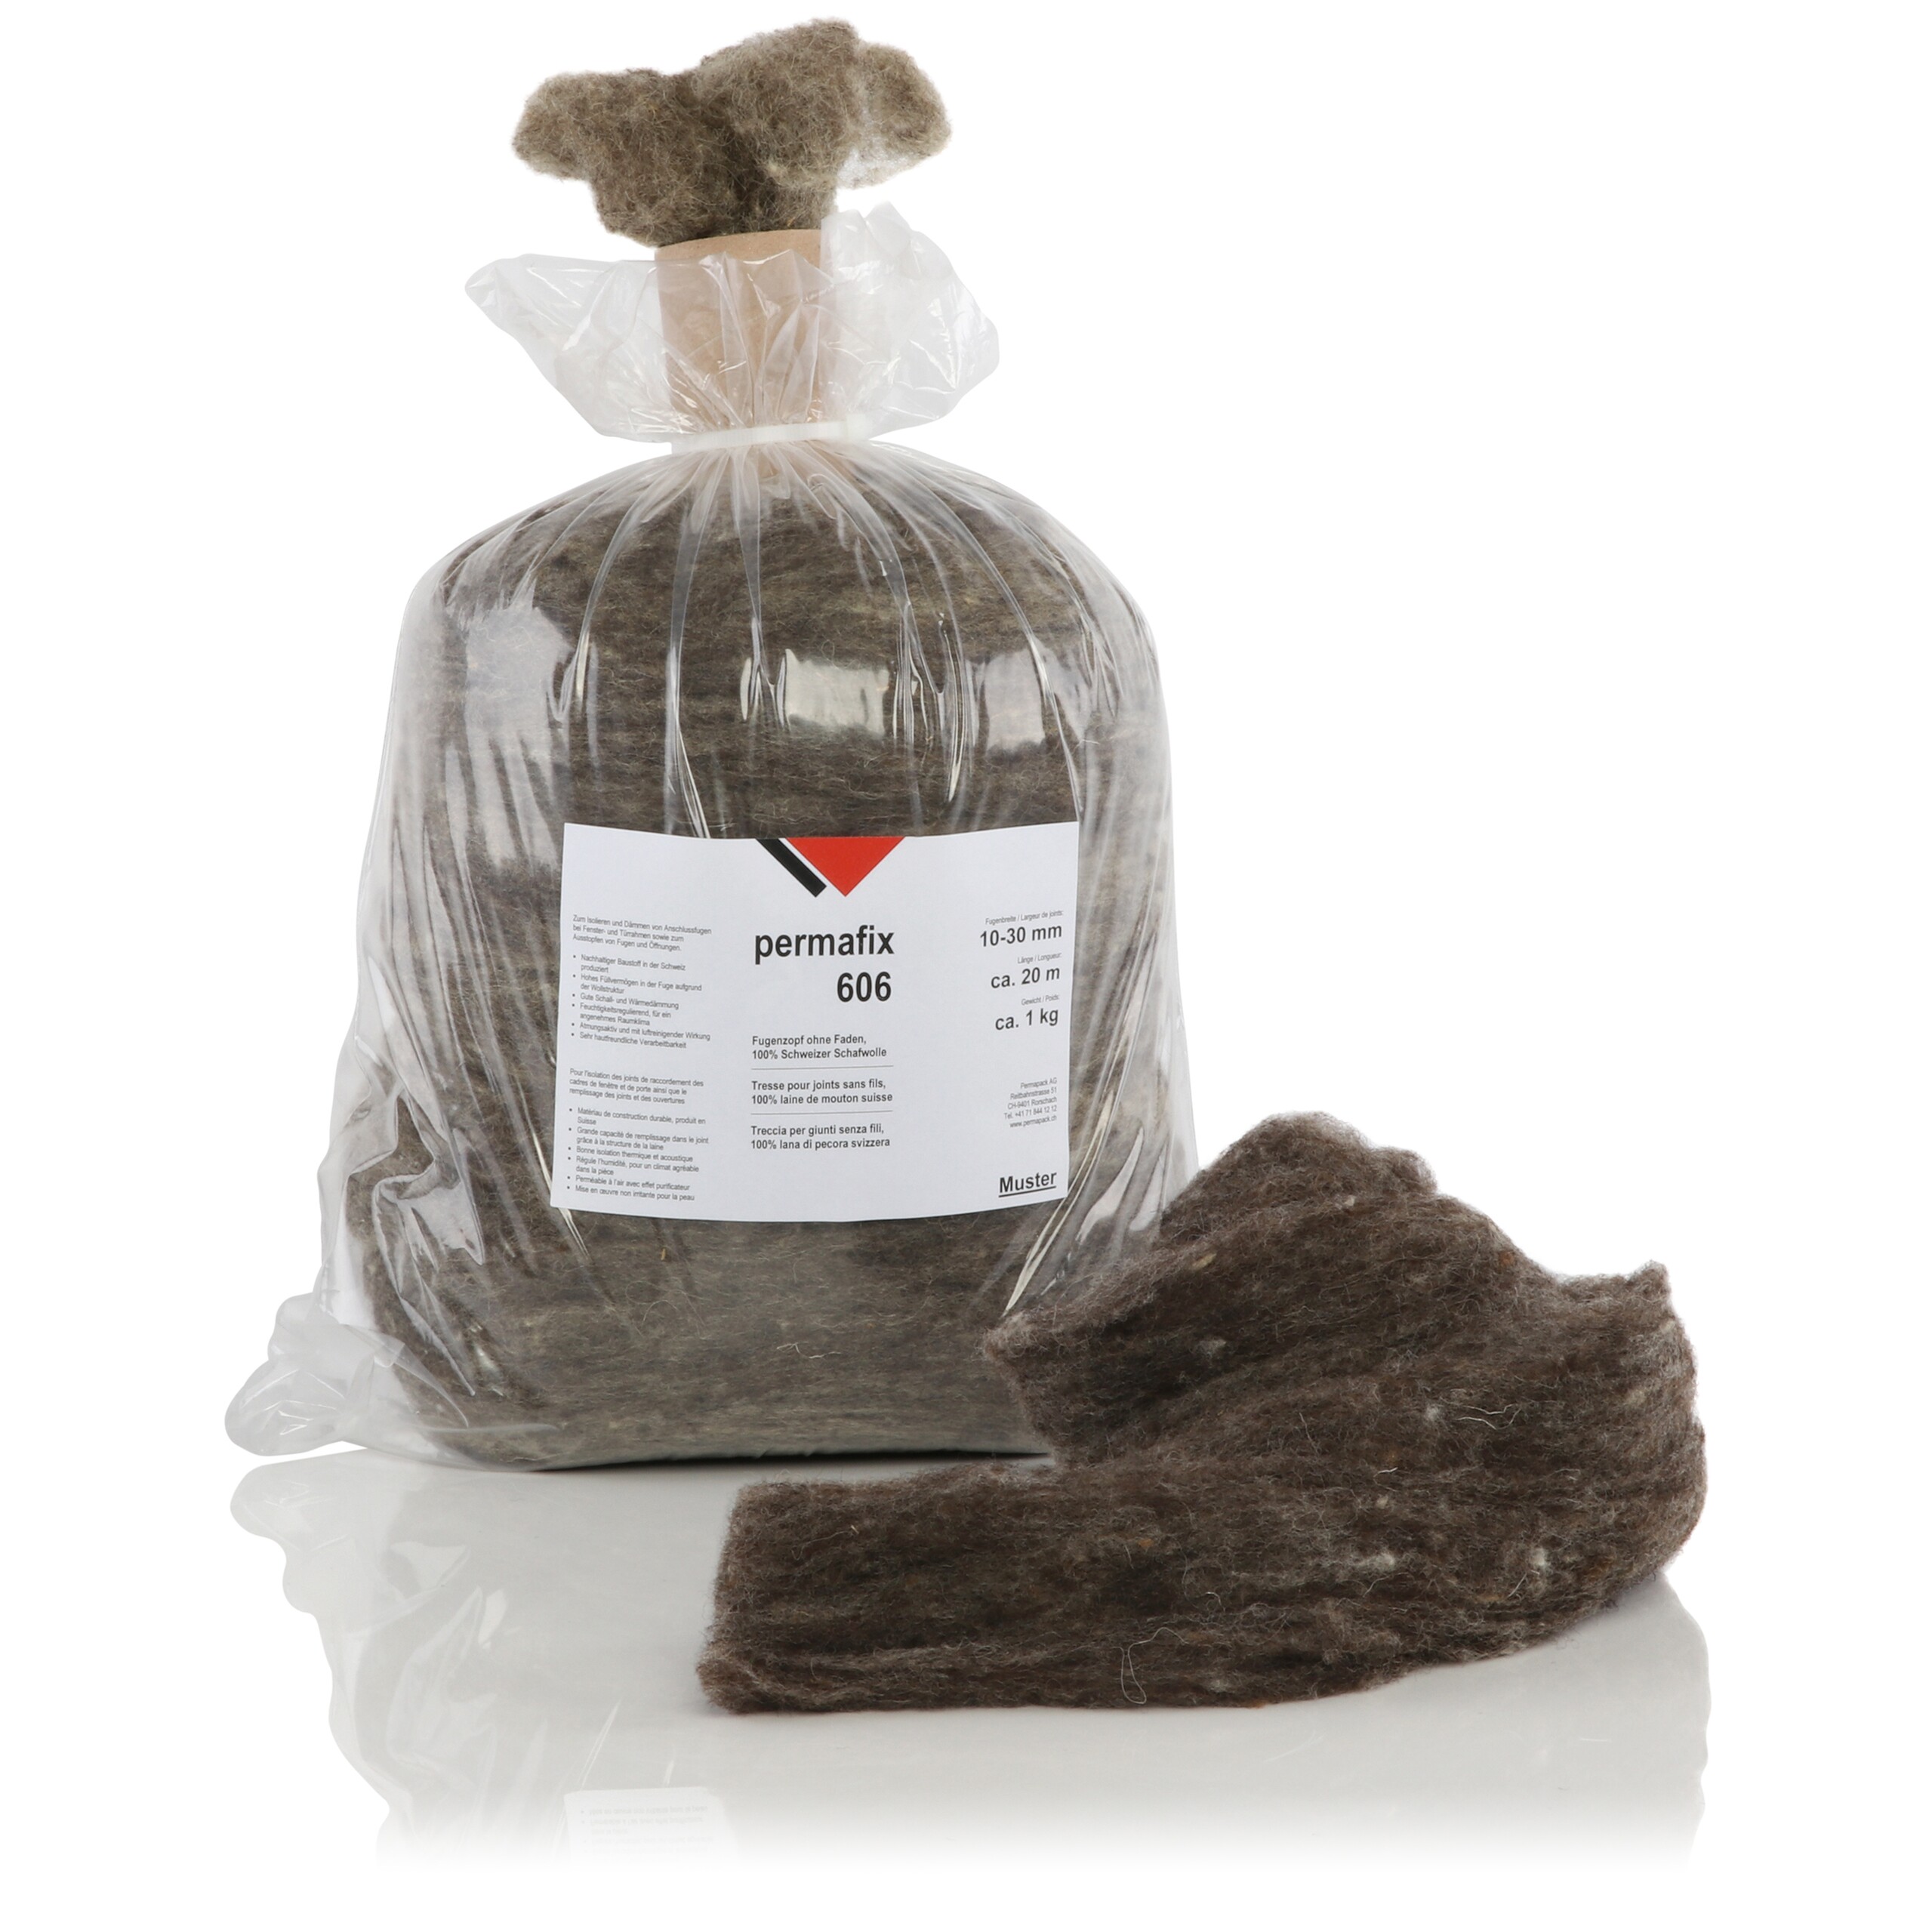 Un sac de tresse à joints sans fil en 100% laine de mouton suisse